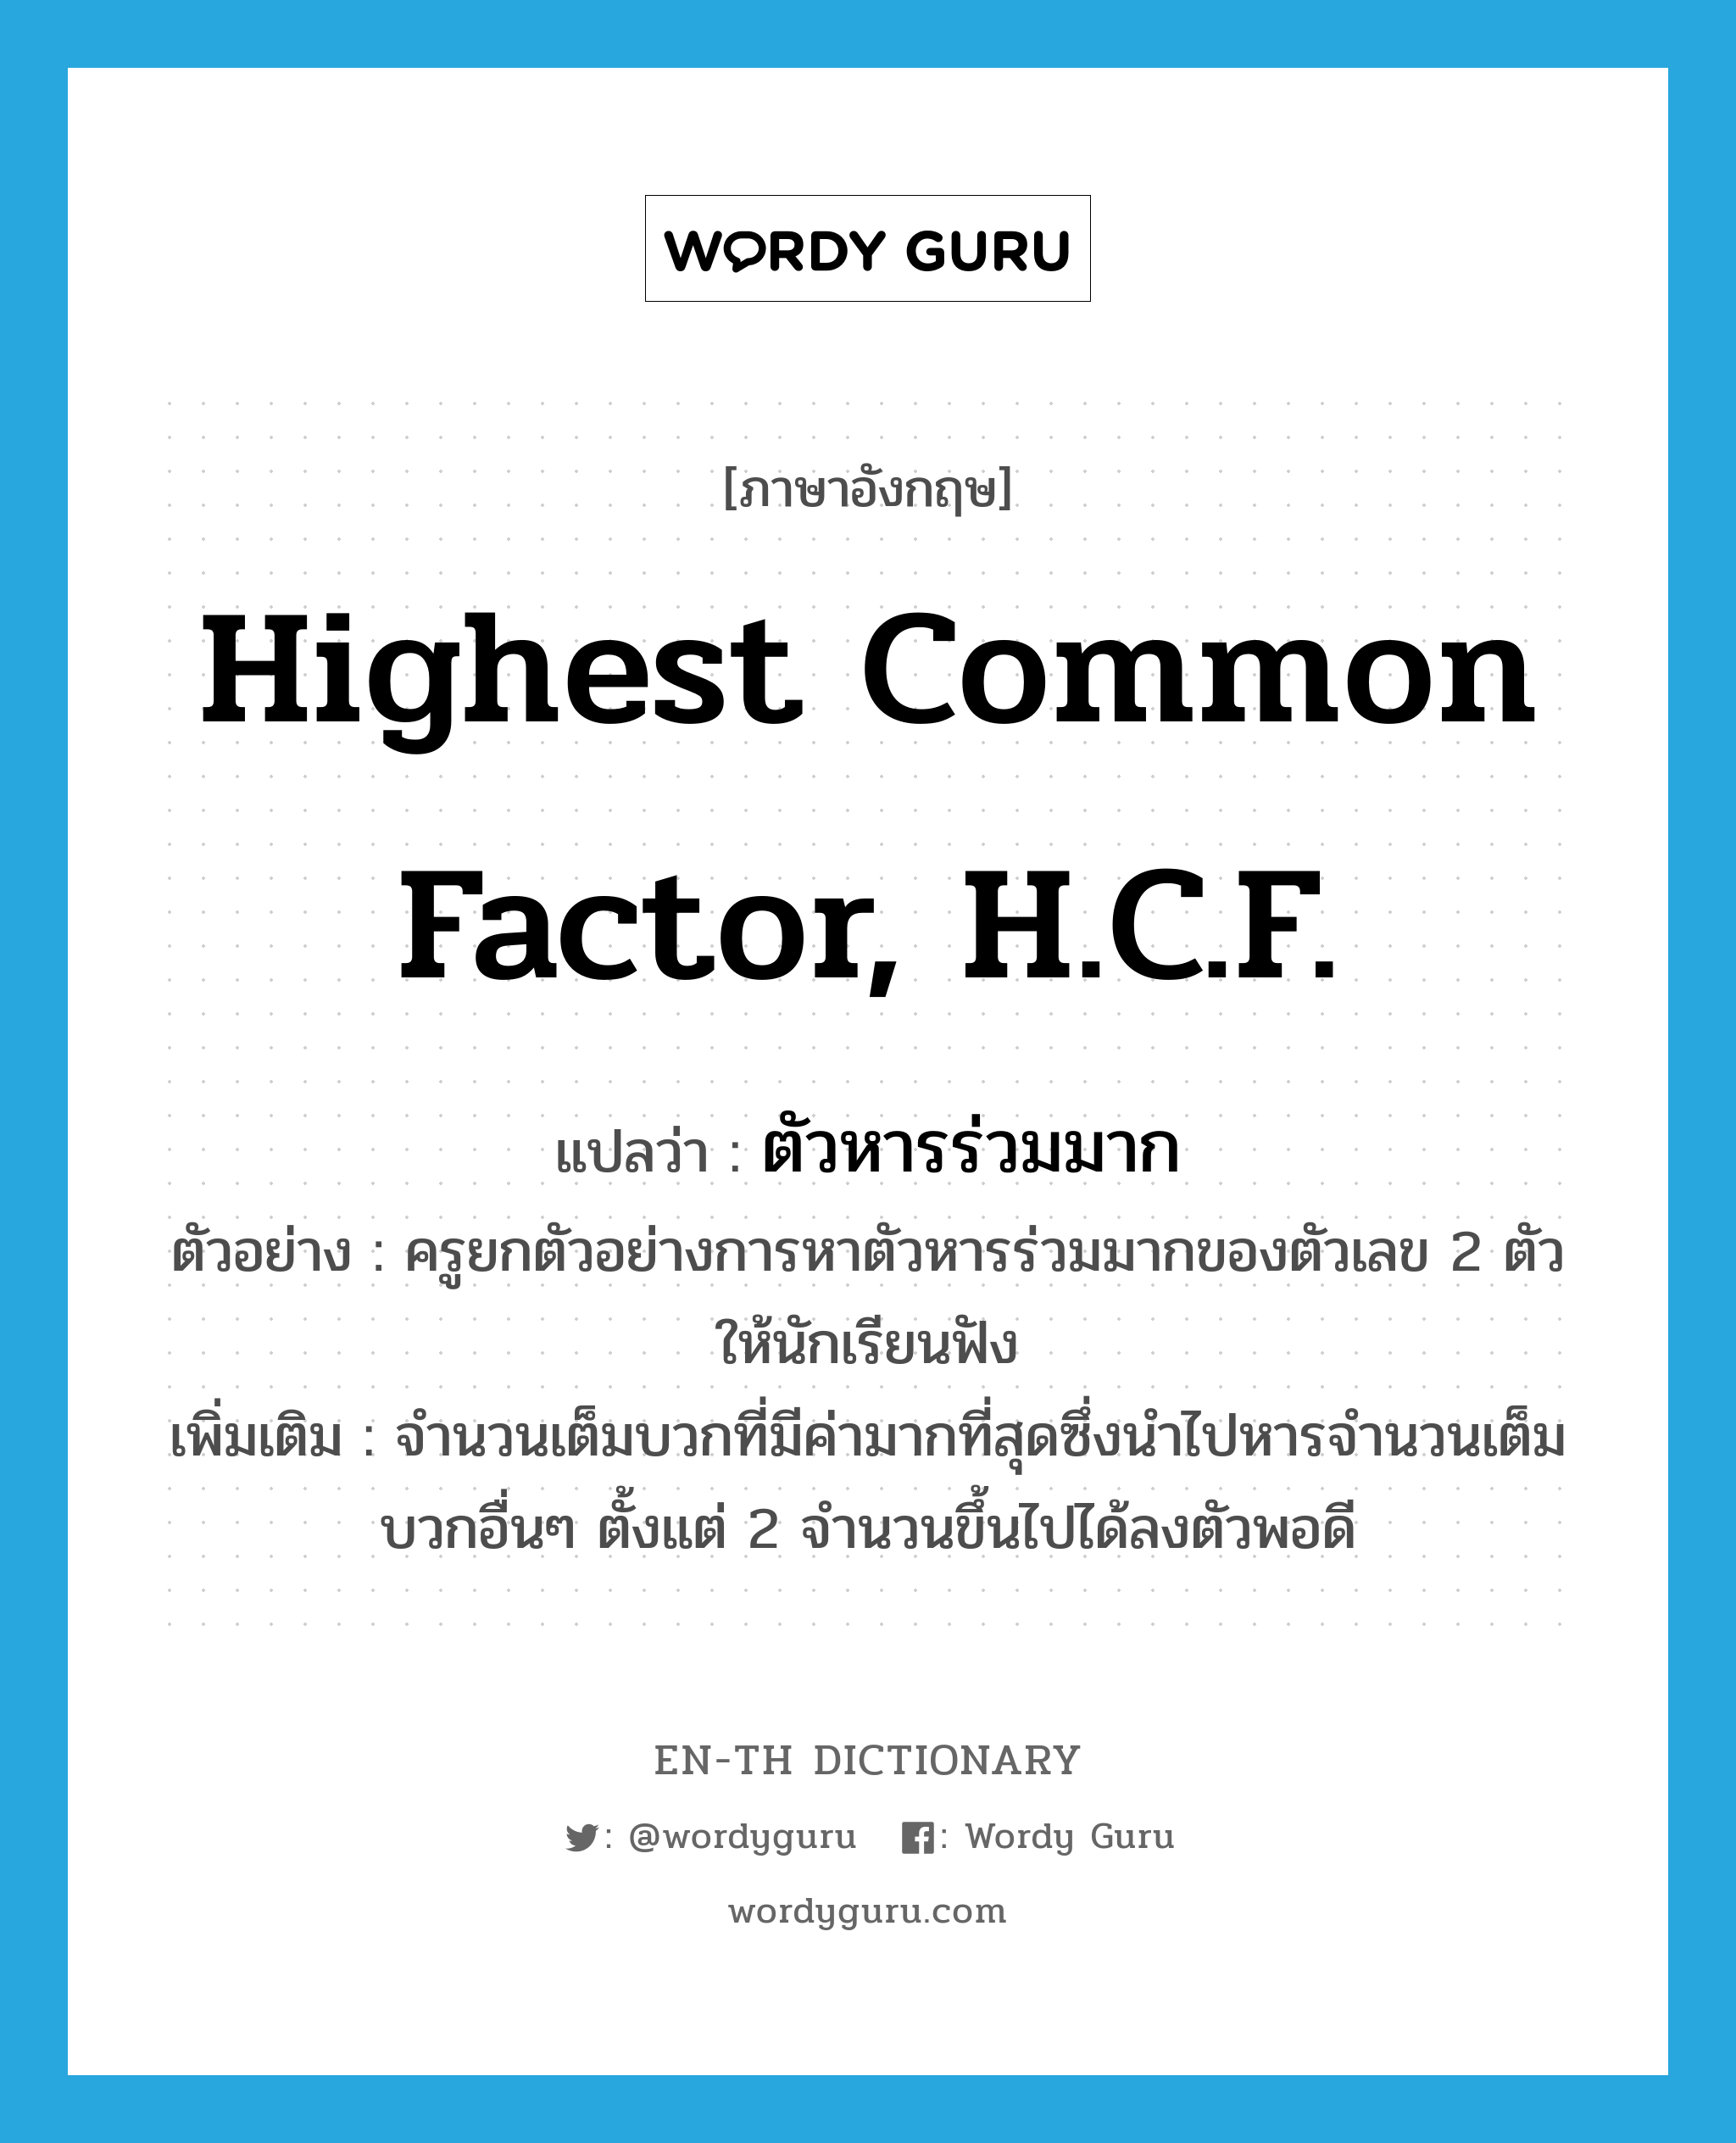 highest common factor, H.C.F. แปลว่า?, คำศัพท์ภาษาอังกฤษ highest common factor, H.C.F. แปลว่า ตัวหารร่วมมาก ประเภท N ตัวอย่าง ครูยกตัวอย่างการหาตัวหารร่วมมากของตัวเลข 2 ตัว ให้นักเรียนฟัง เพิ่มเติม จำนวนเต็มบวกที่มีค่ามากที่สุดซึ่งนำไปหารจำนวนเต็มบวกอื่นๆ ตั้งแต่ 2 จำนวนขึ้นไปได้ลงตัวพอดี หมวด N